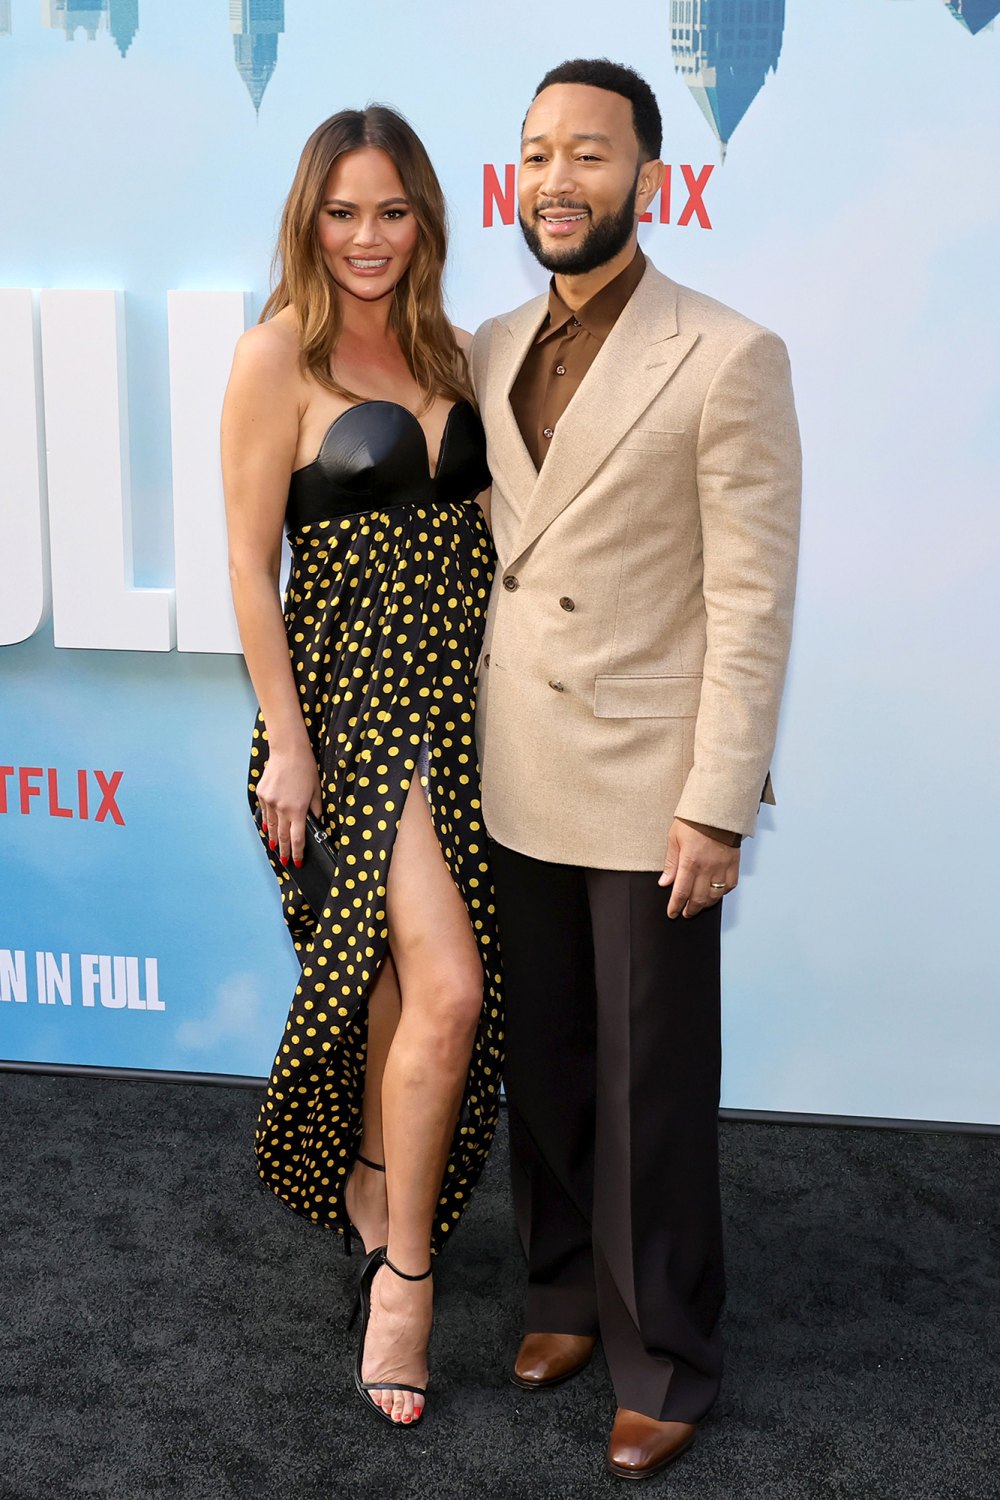 Chrissy Teigen in $5K Dress With John Legend at Netflix Premiere